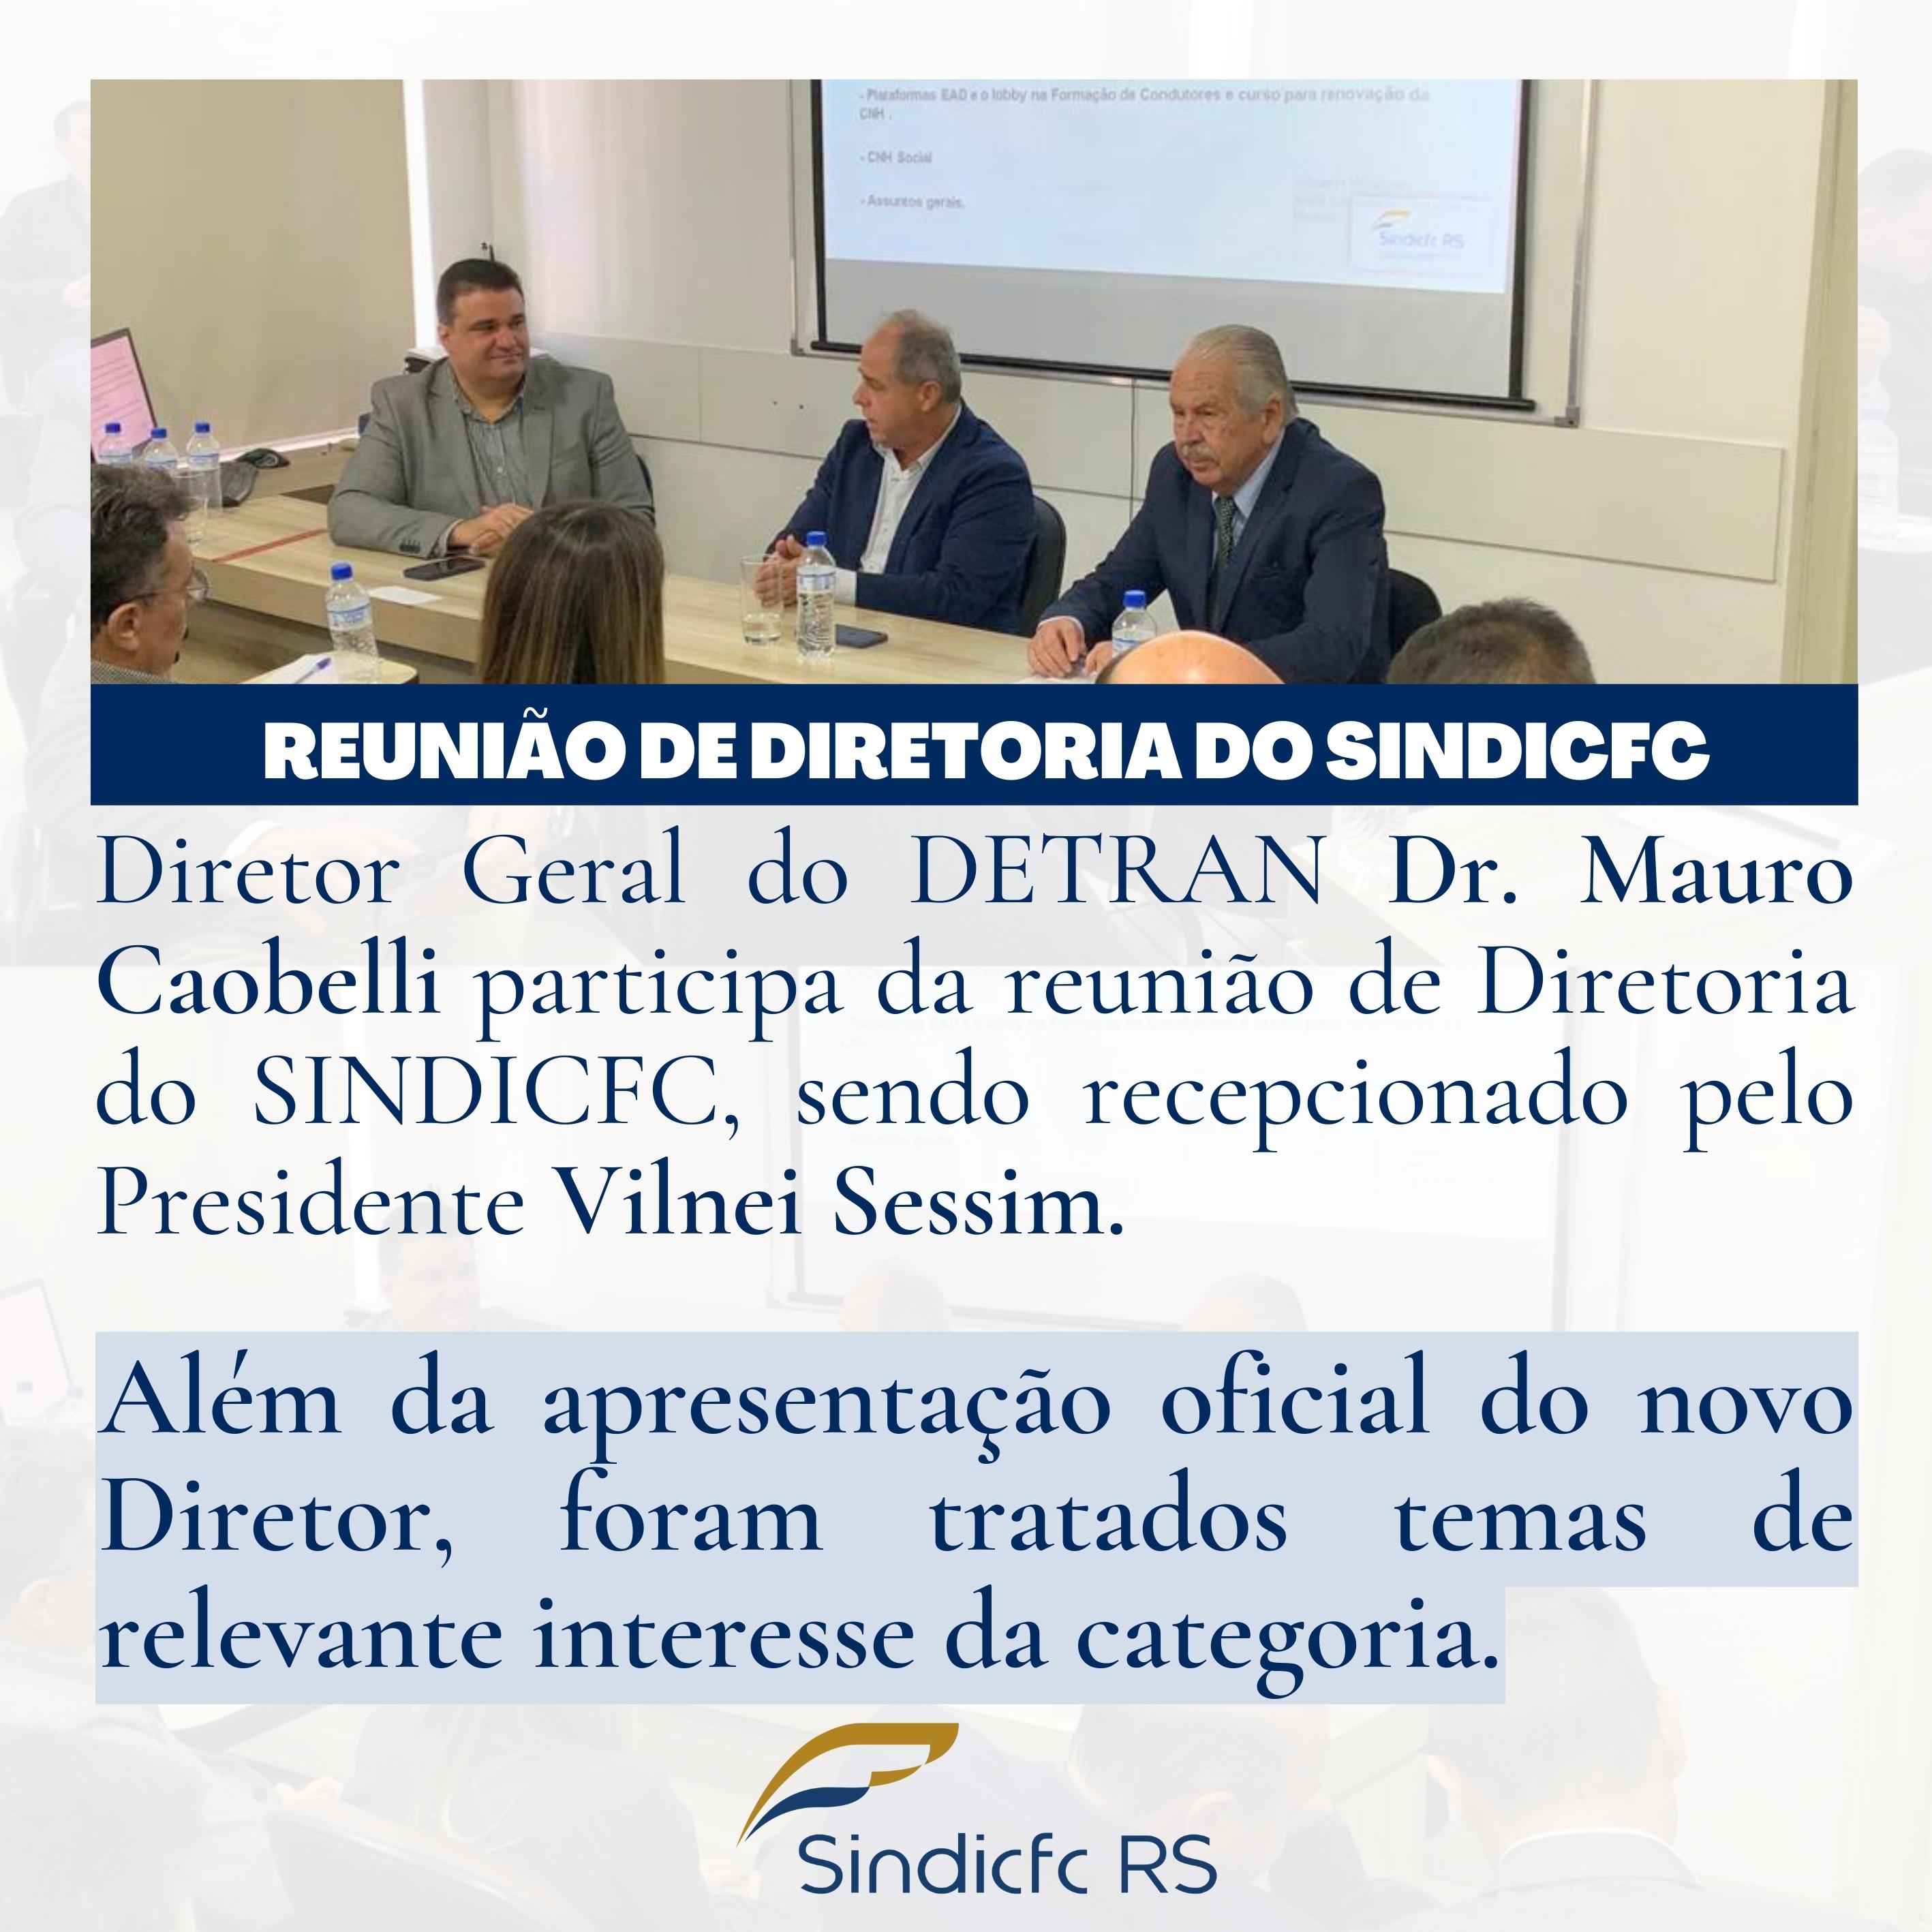 Diretor Geral do DETRAN Dr. Mauro Caobelli participa da reunião de Diretoria do SINDICFC, sendo recepcionado pelo Presidente Vilnei Sessim. Além da apresentação oficial do novo Diretor, foram tratados temas de relevante interesse da categoria.